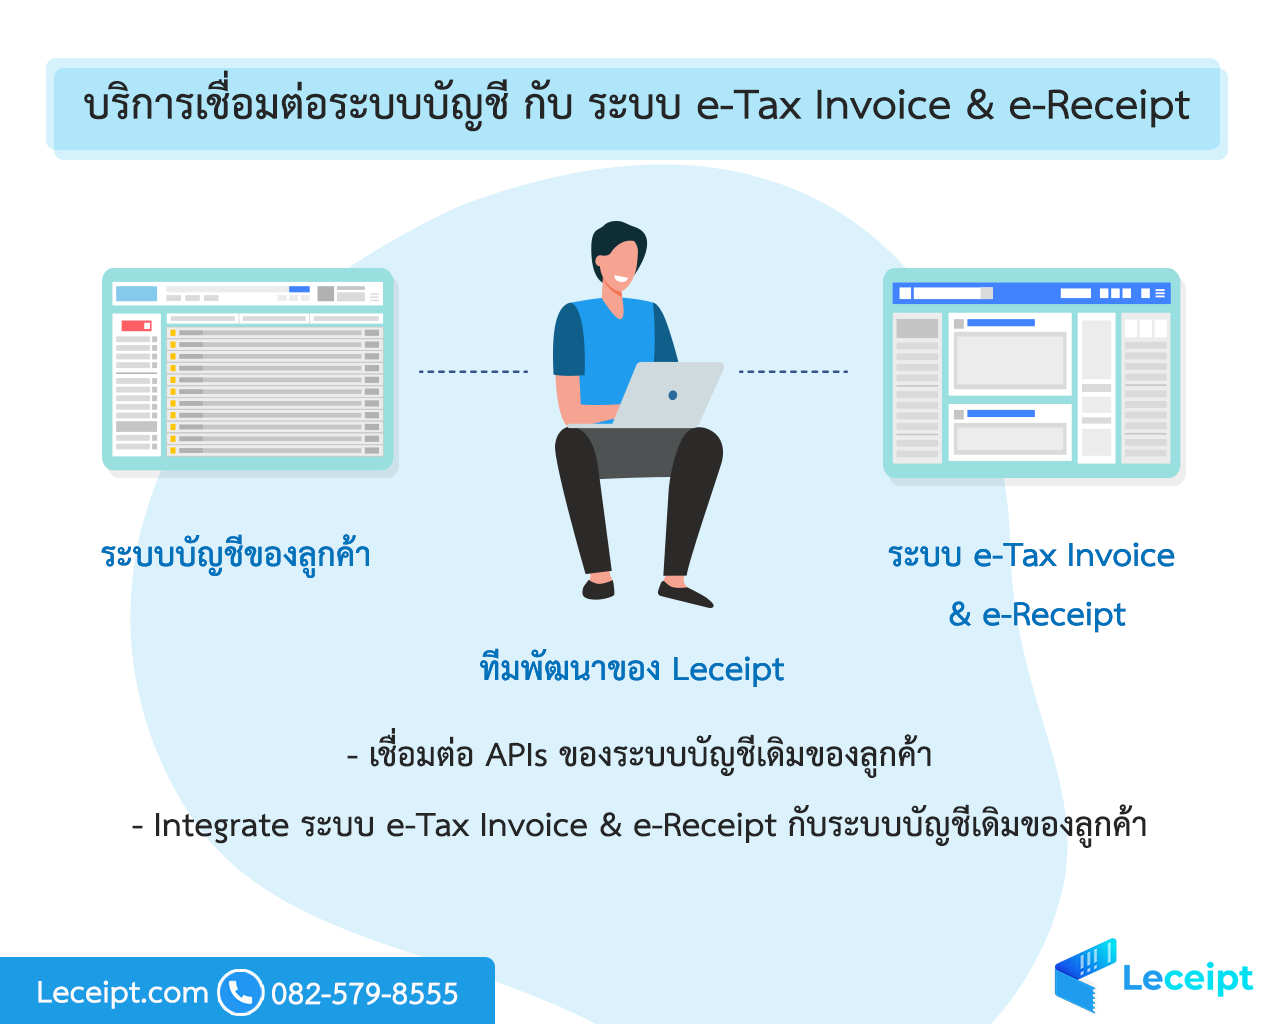 เชื่อมต่อระบบบัญชี กับ ระบบ e-Tax Invoice & e-Receipt